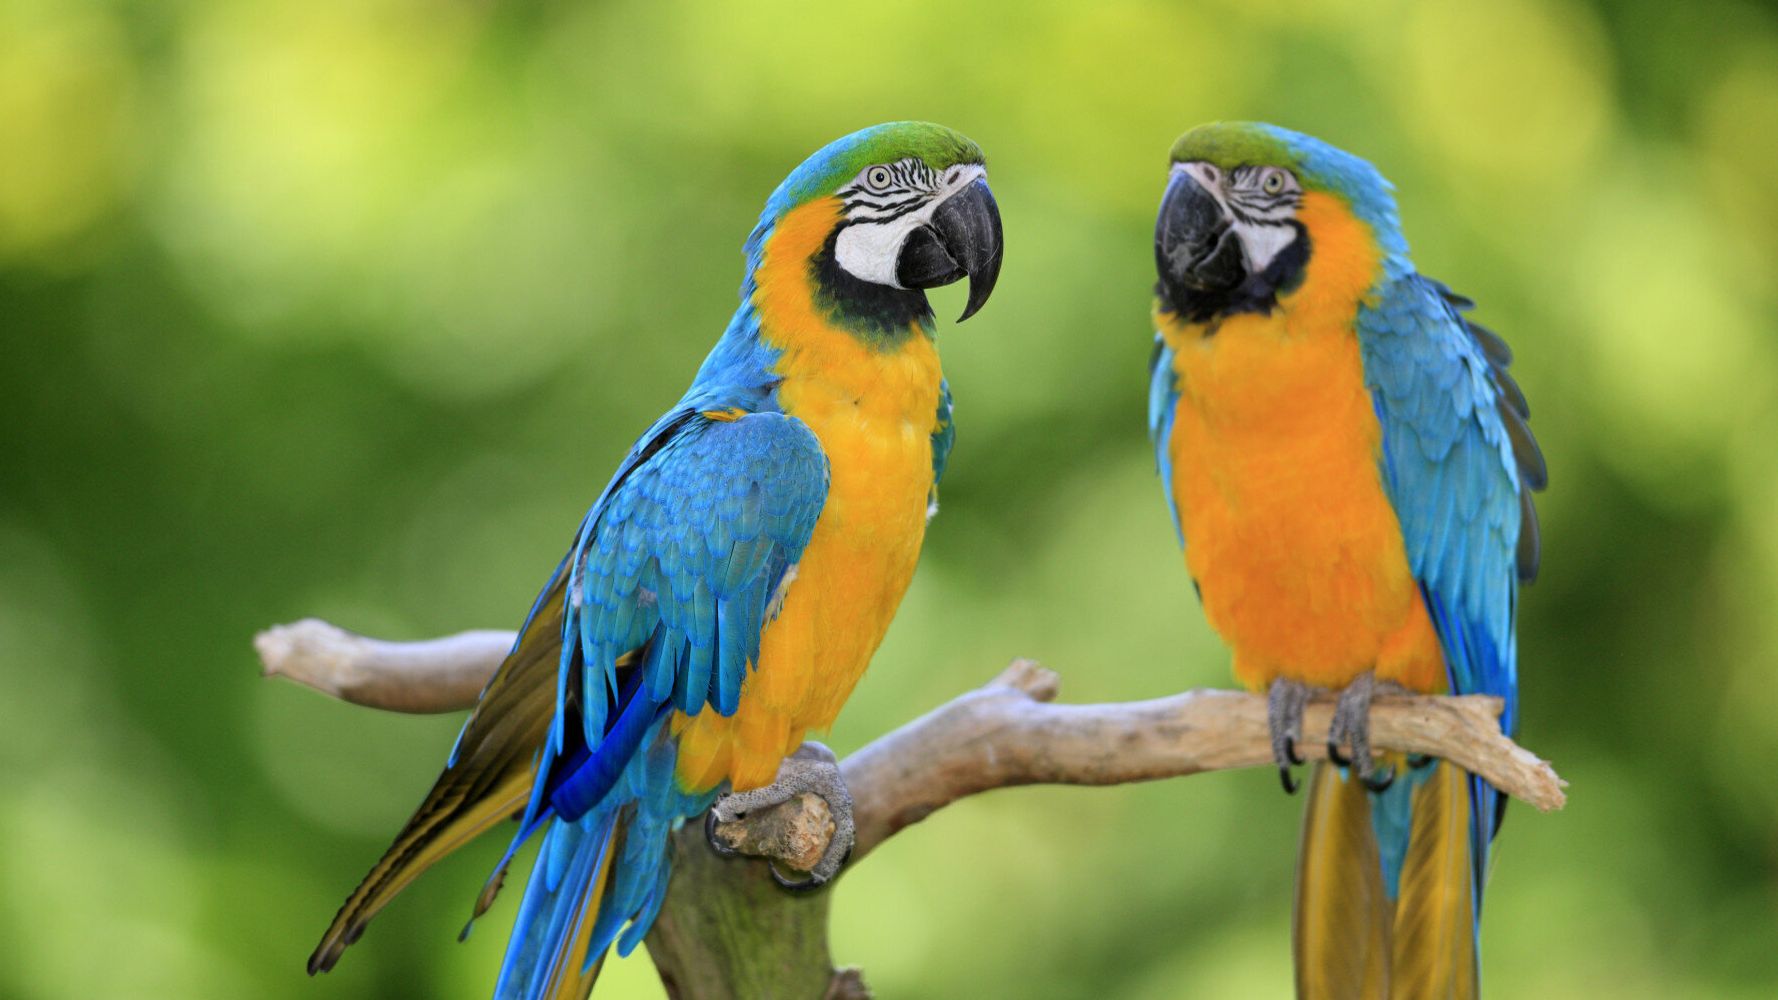 Βρετανία: Σε… πρόγραμμα αναμόρφωσης μπήκαν πέντε παπαγάλοι σε ζωολογικό κήπο επειδή… έβριζαν όταν ήταν μαζί